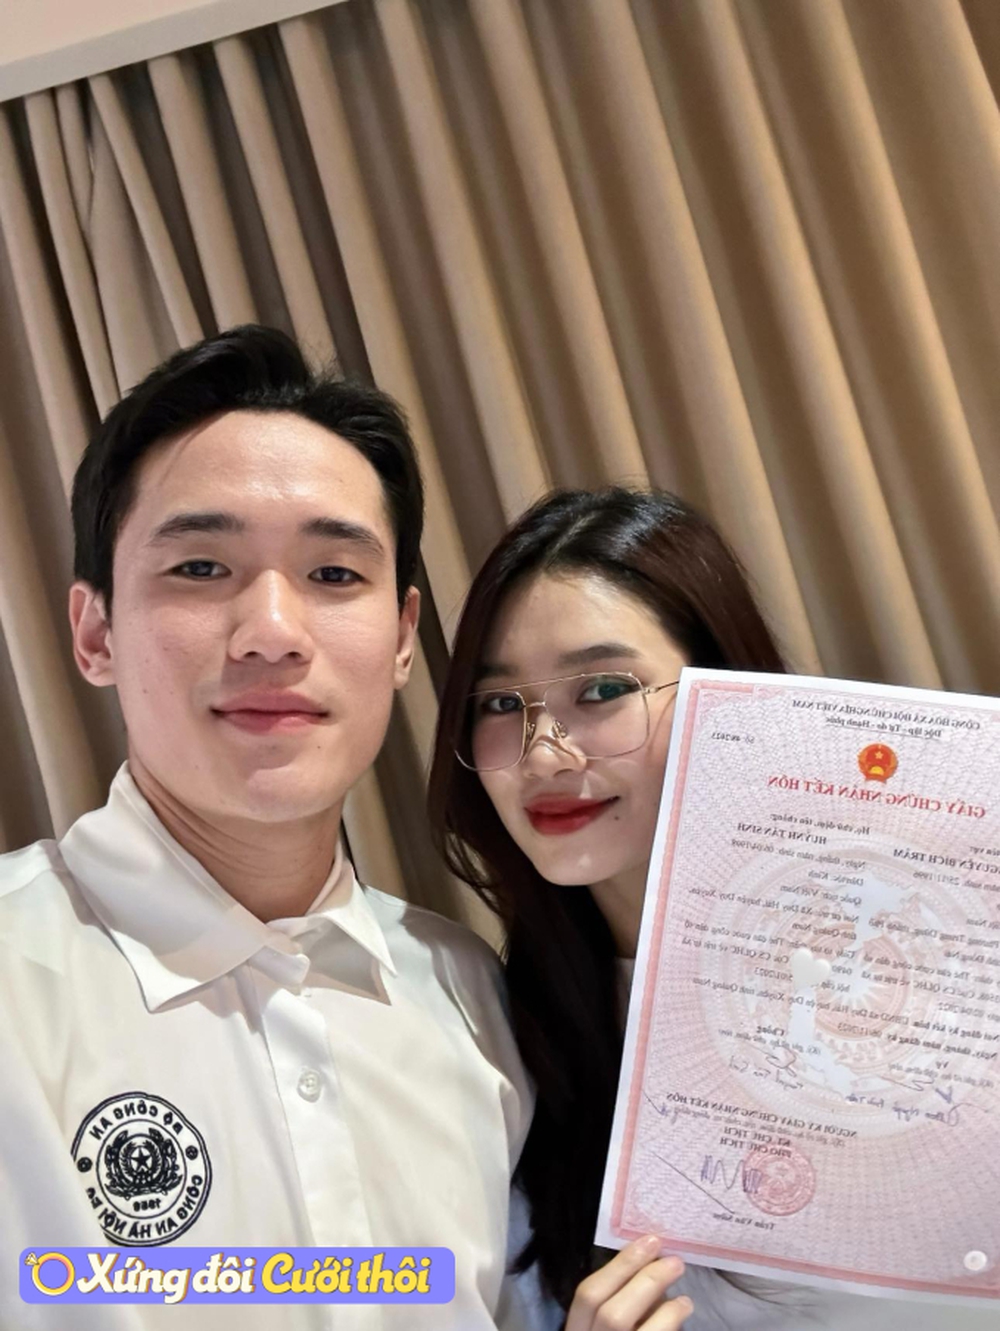 Trung vệ điển trai nhất U23 Việt Nam khoe giấy đăng ký kết hôn với vợ làm ngân hàng - Ảnh 1.